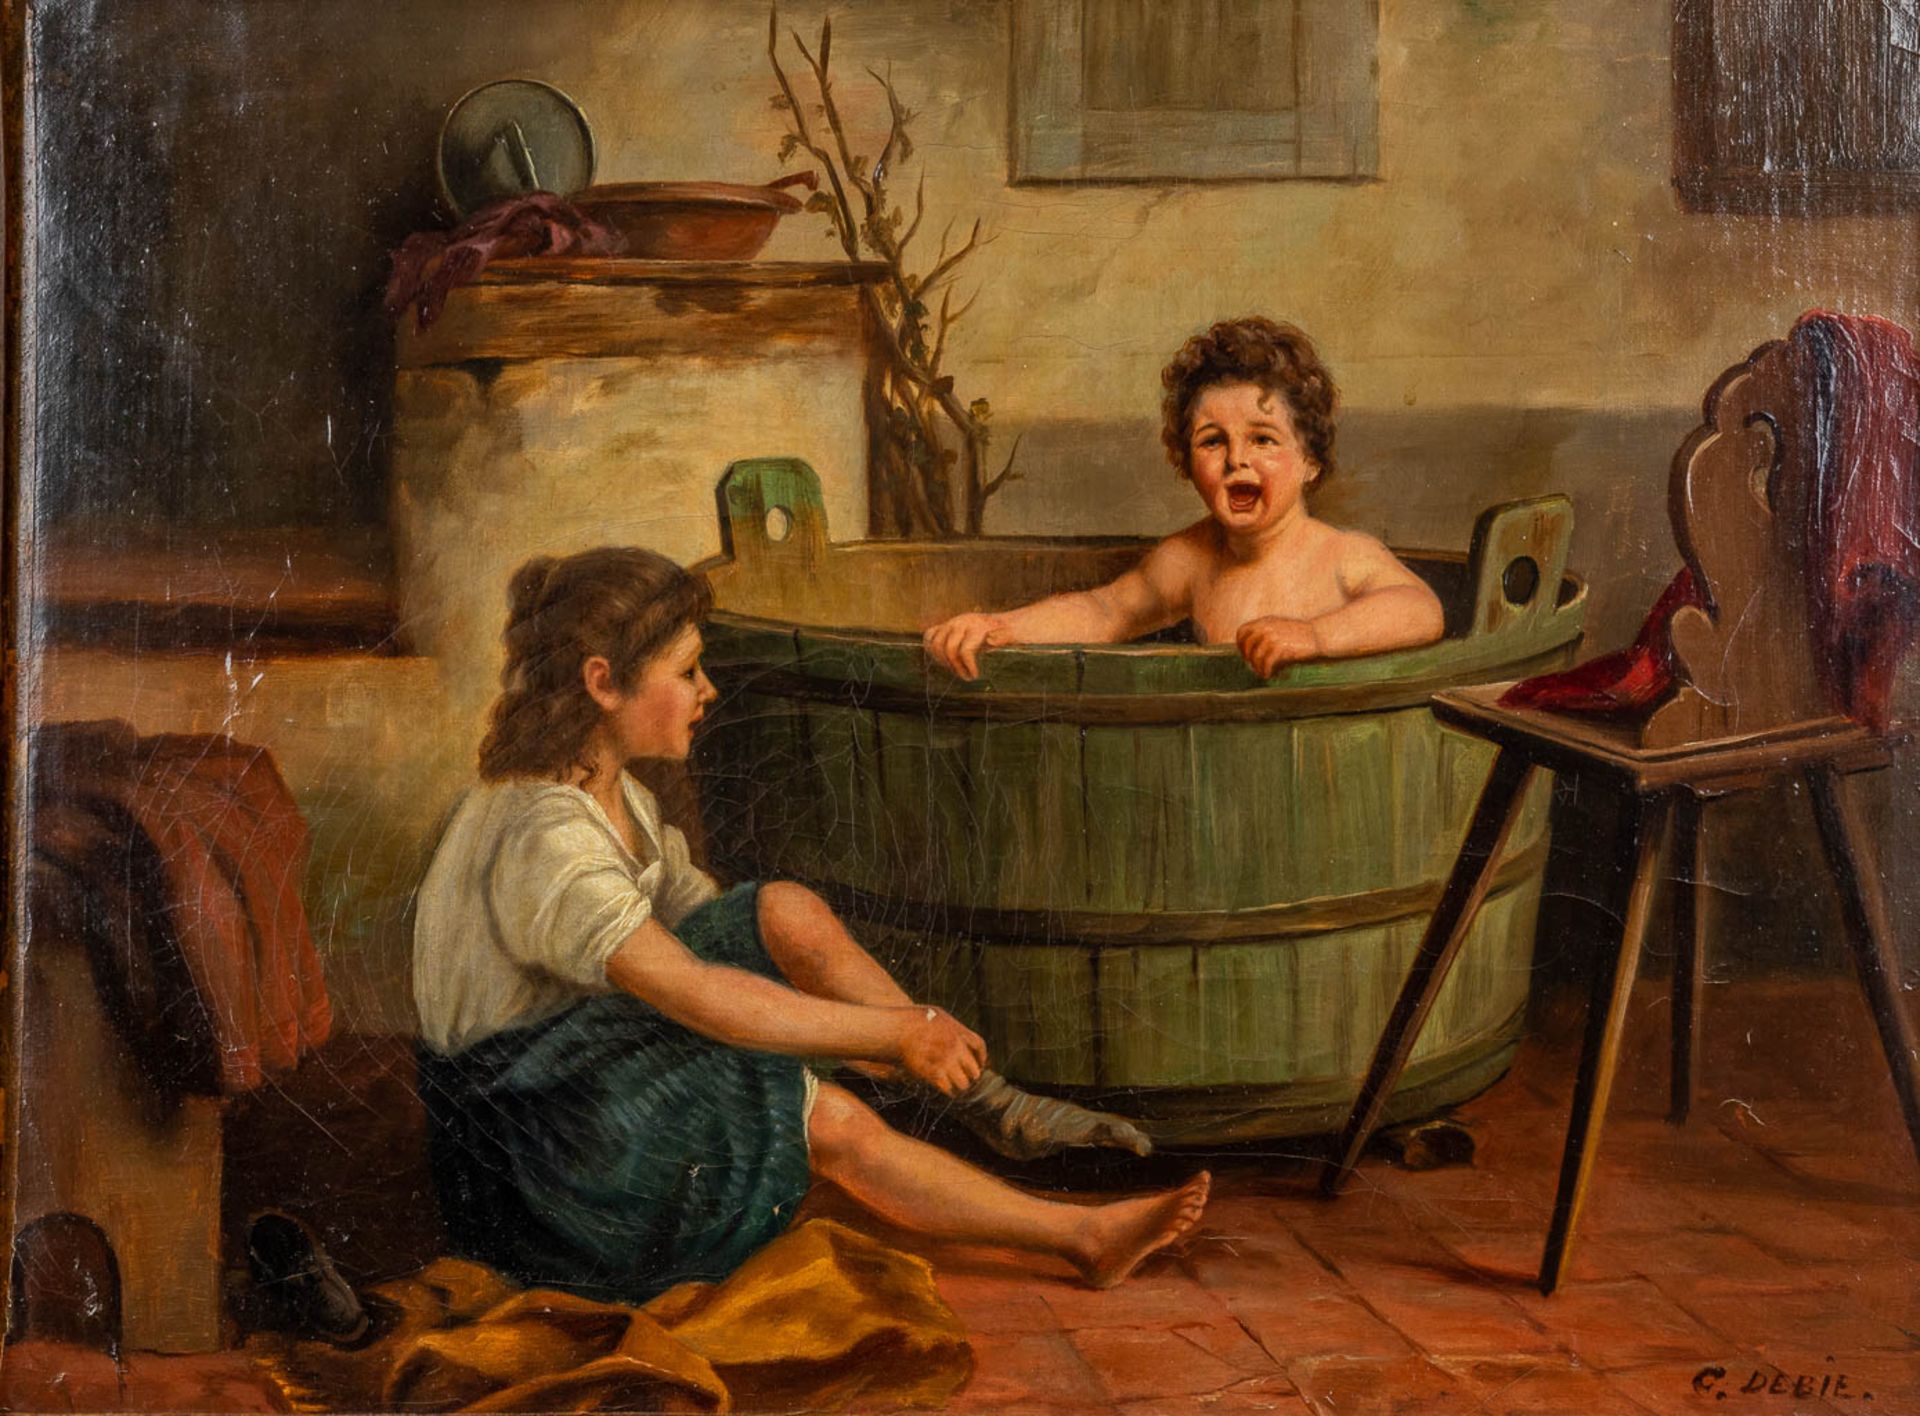 Corneille DEBIE (XIX) 'Bathing time' oil on canvas. (W: 45 x H: 34 cm)